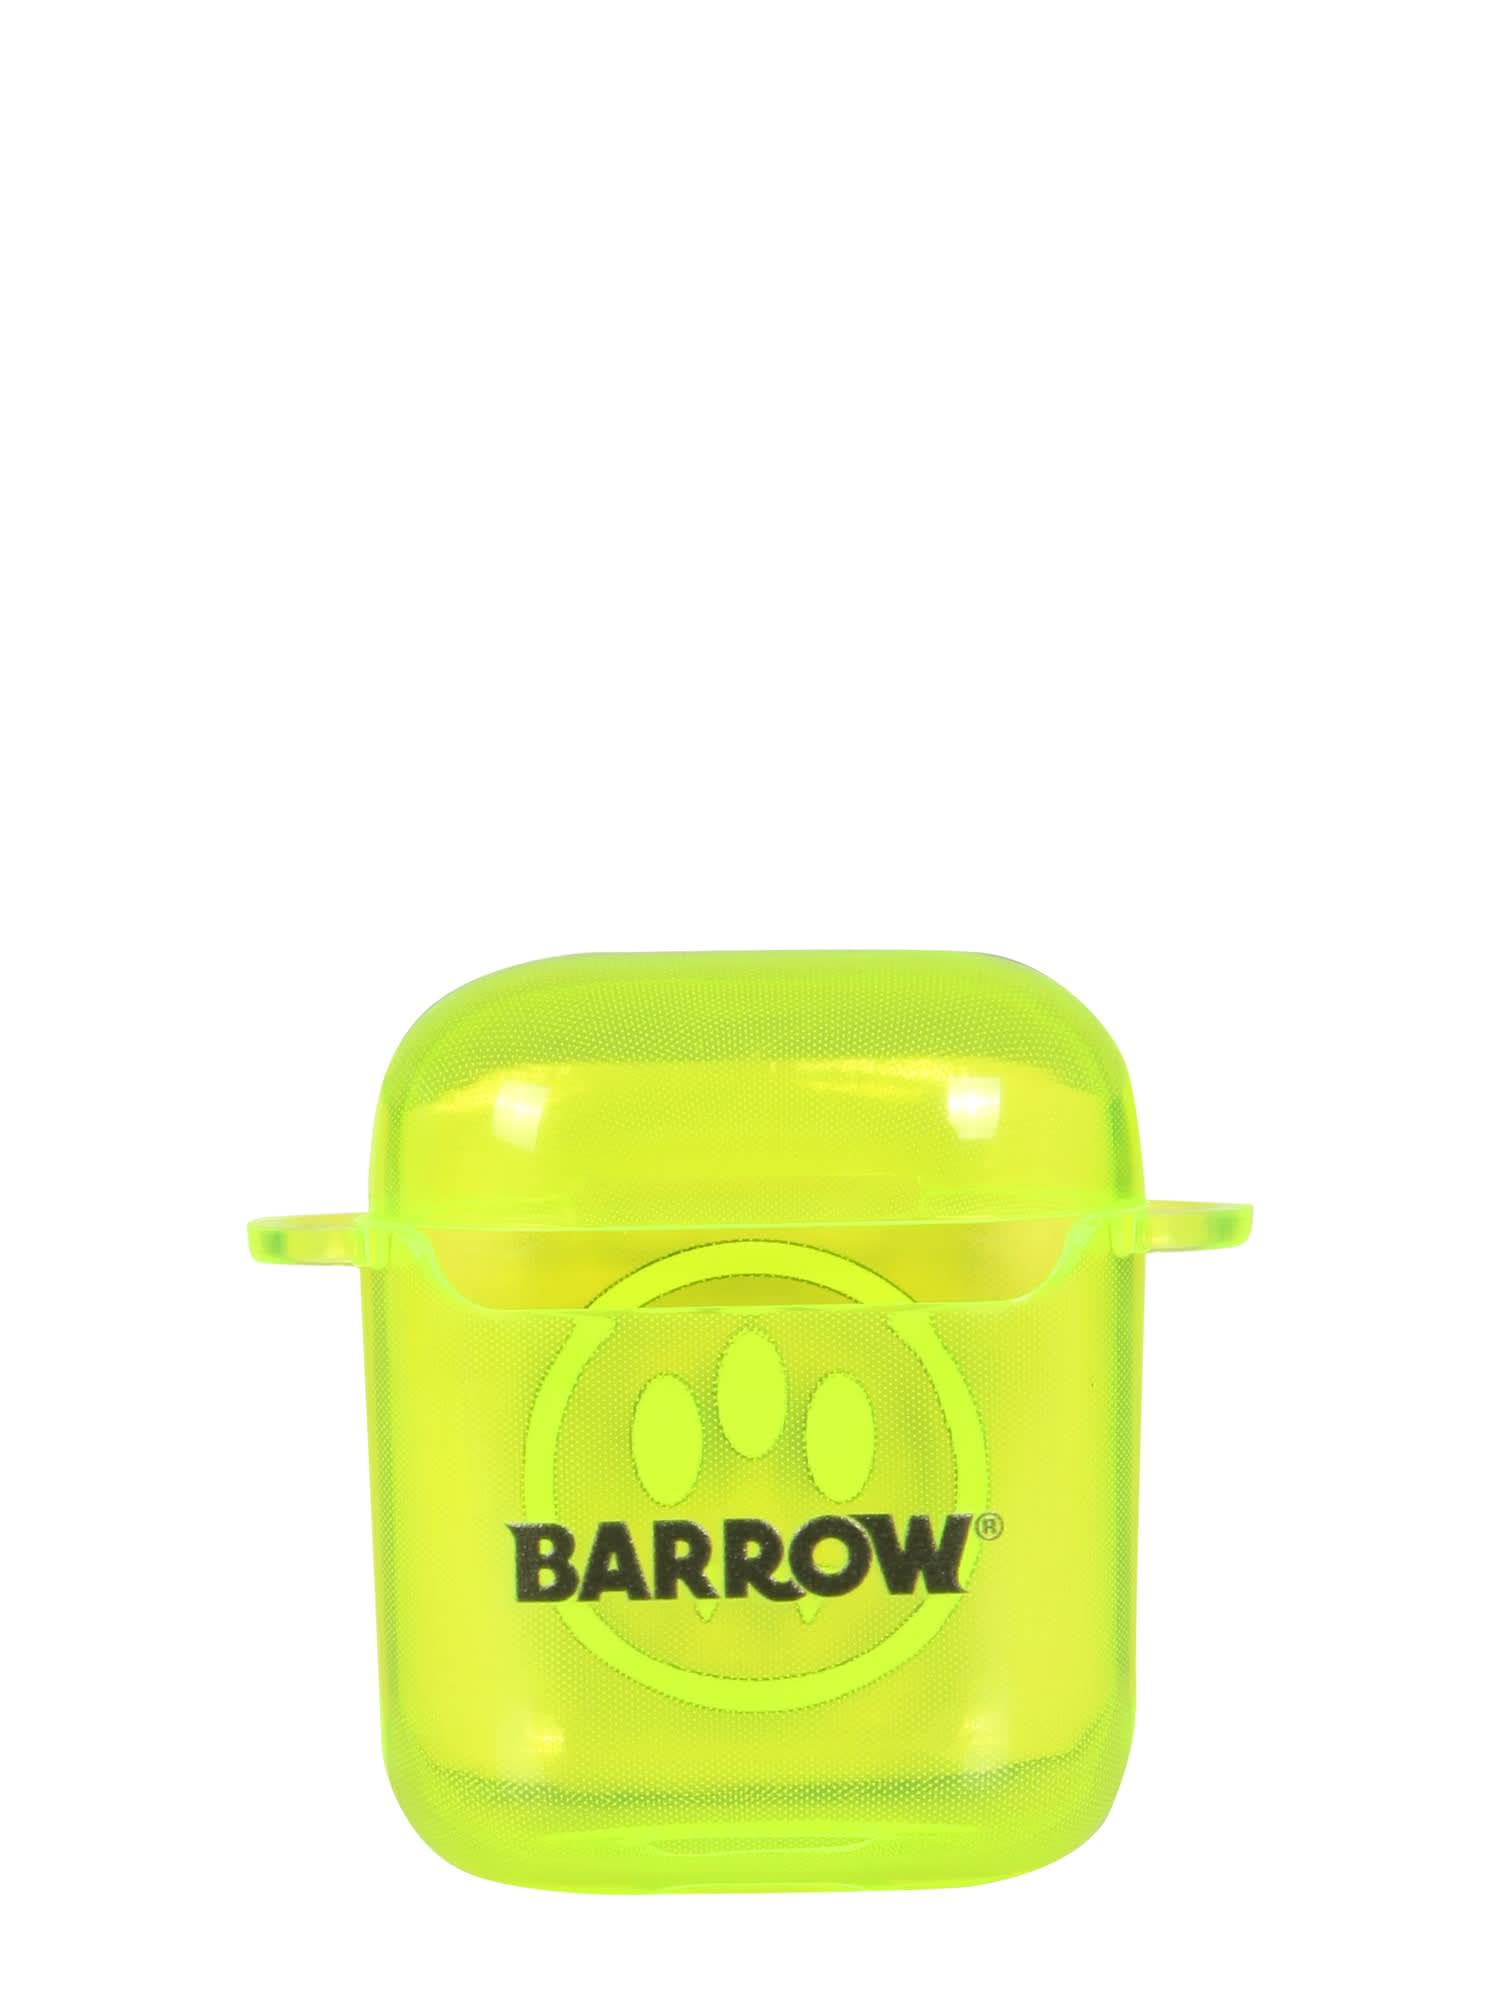 Barrow Airpods Case In Multicolor